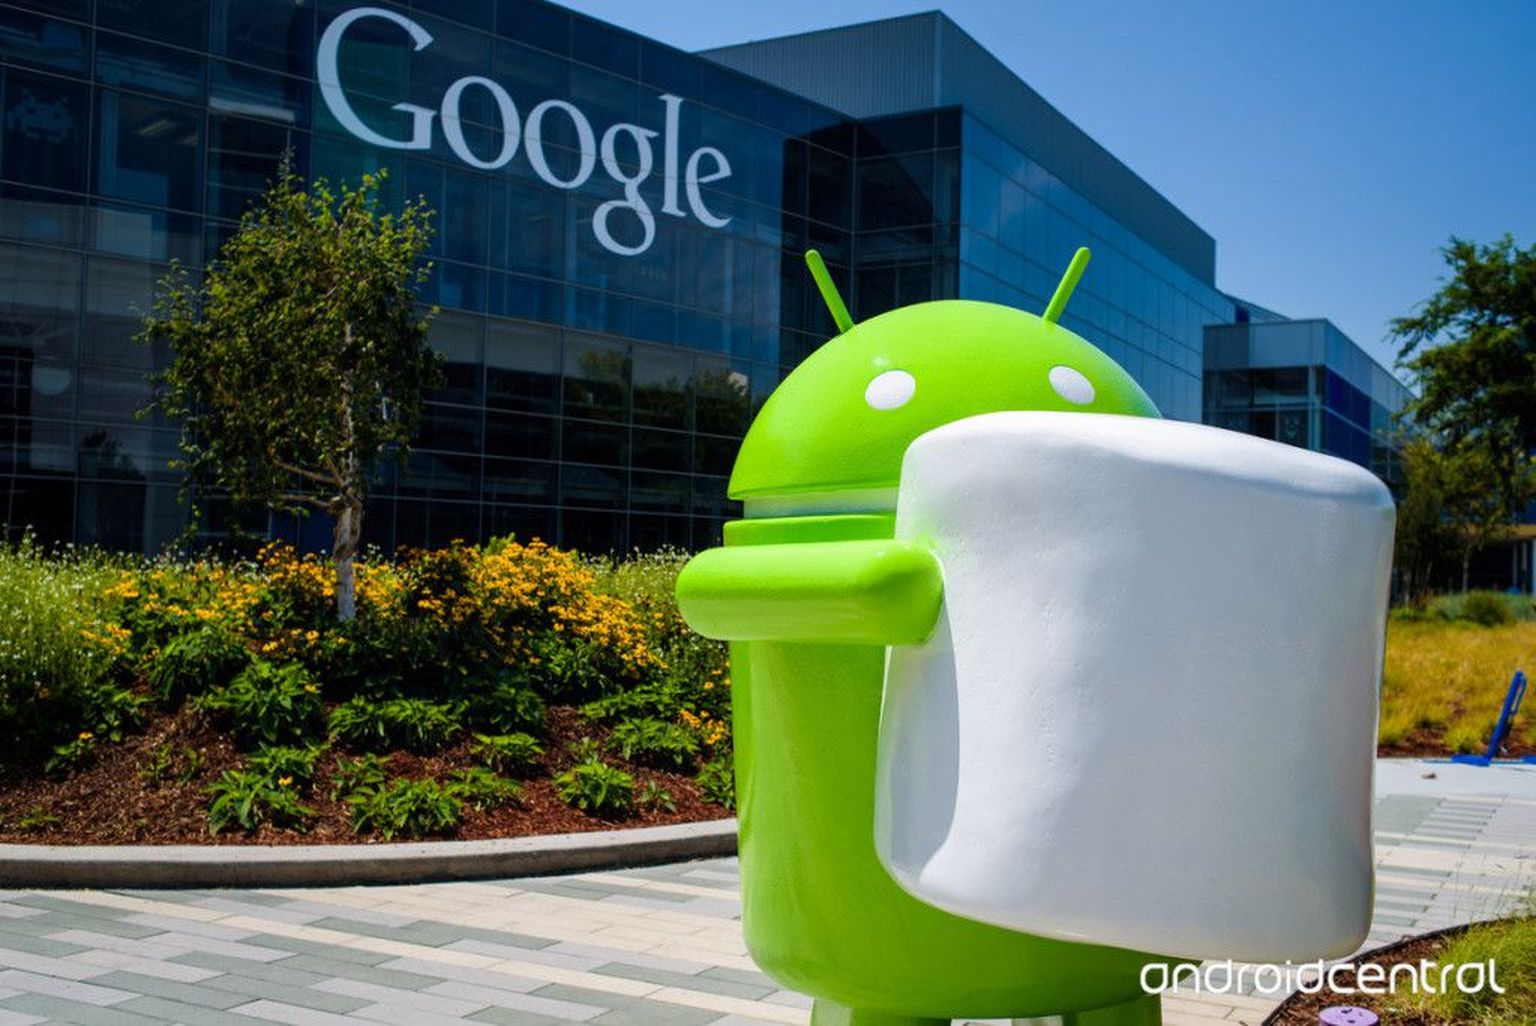 Google'i uusima Androidi-versiooni maskotiks on vahukommi kandev Androidi-mehike.